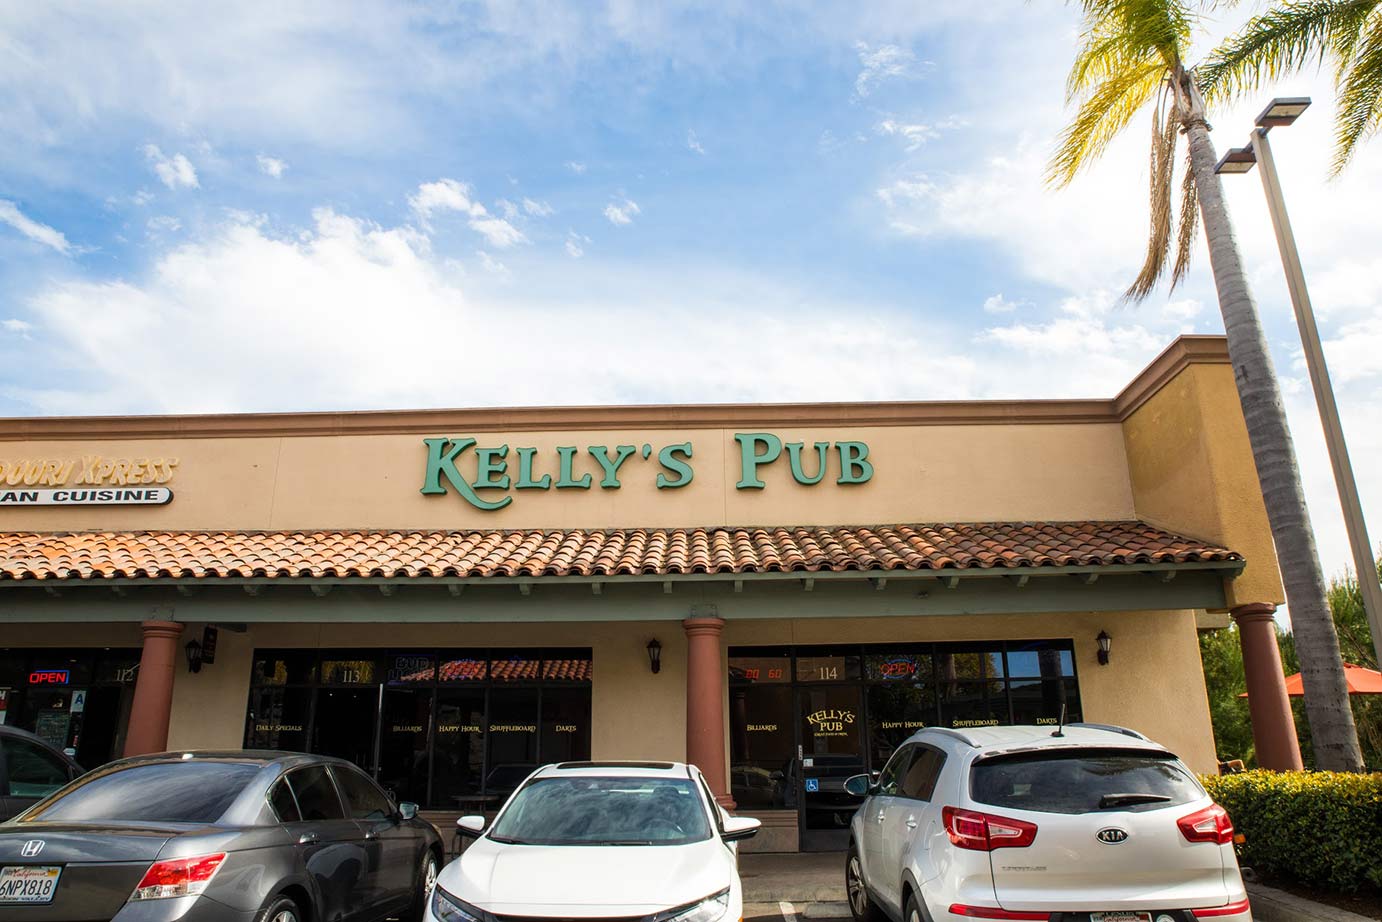 Kelly's Pub exterior